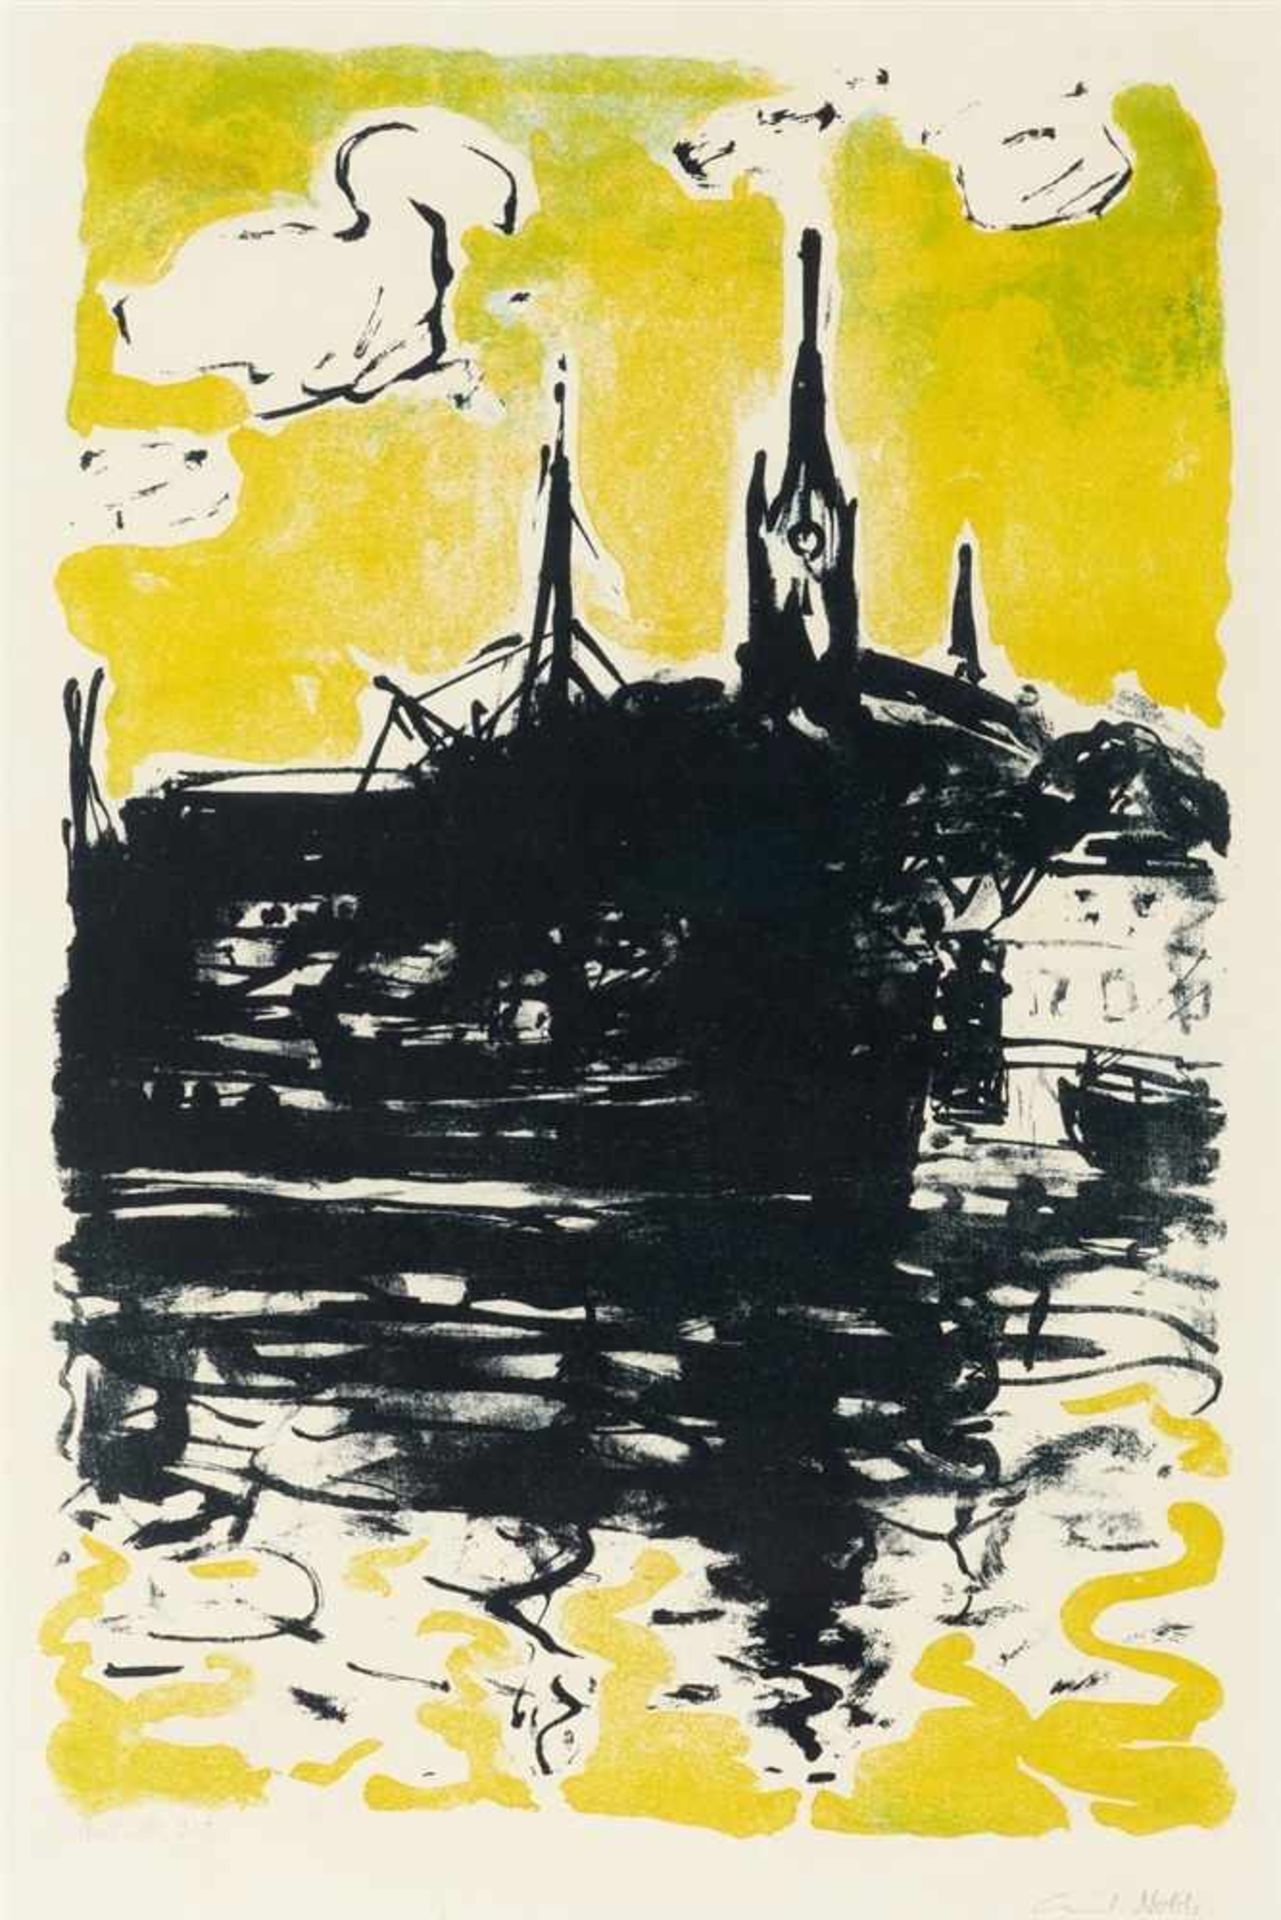 EMIL NOLDE 1867 - 1956KIRCHE UND SCHIFF, SONDERBURG, 1907 (1915)Lithographie in drei Farben (